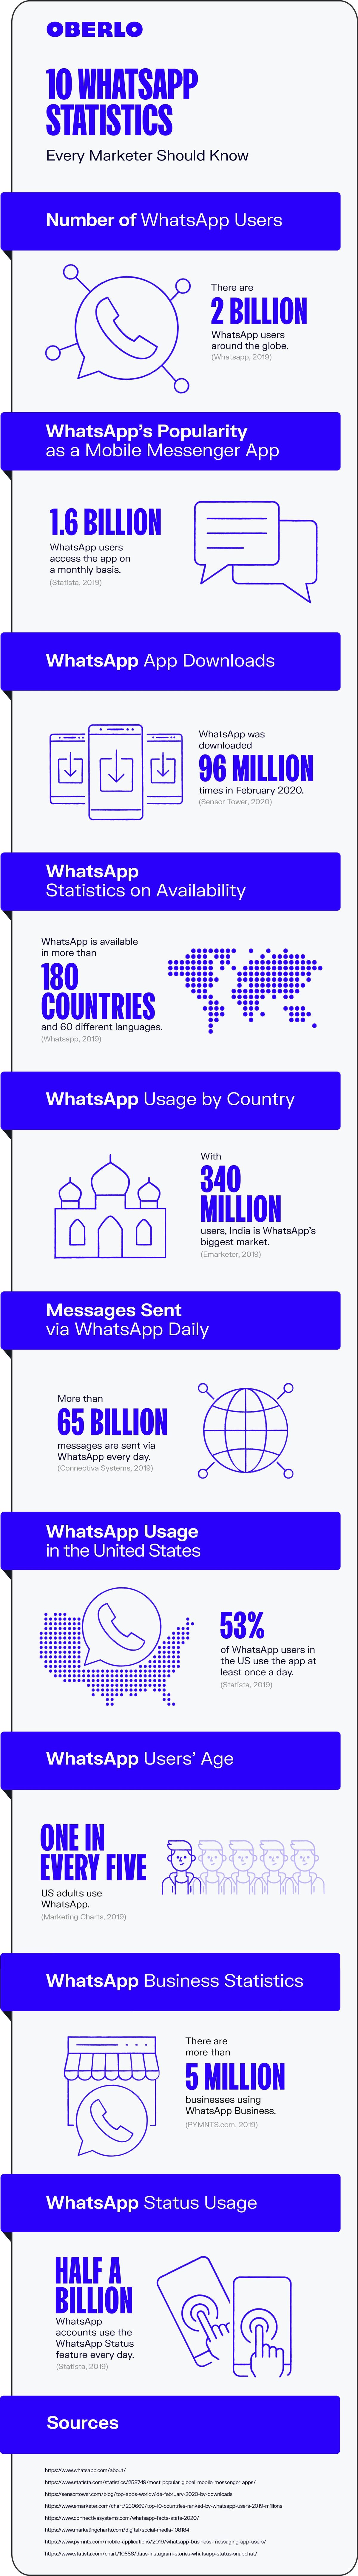 WhatsApp सांख्यिकी 2020